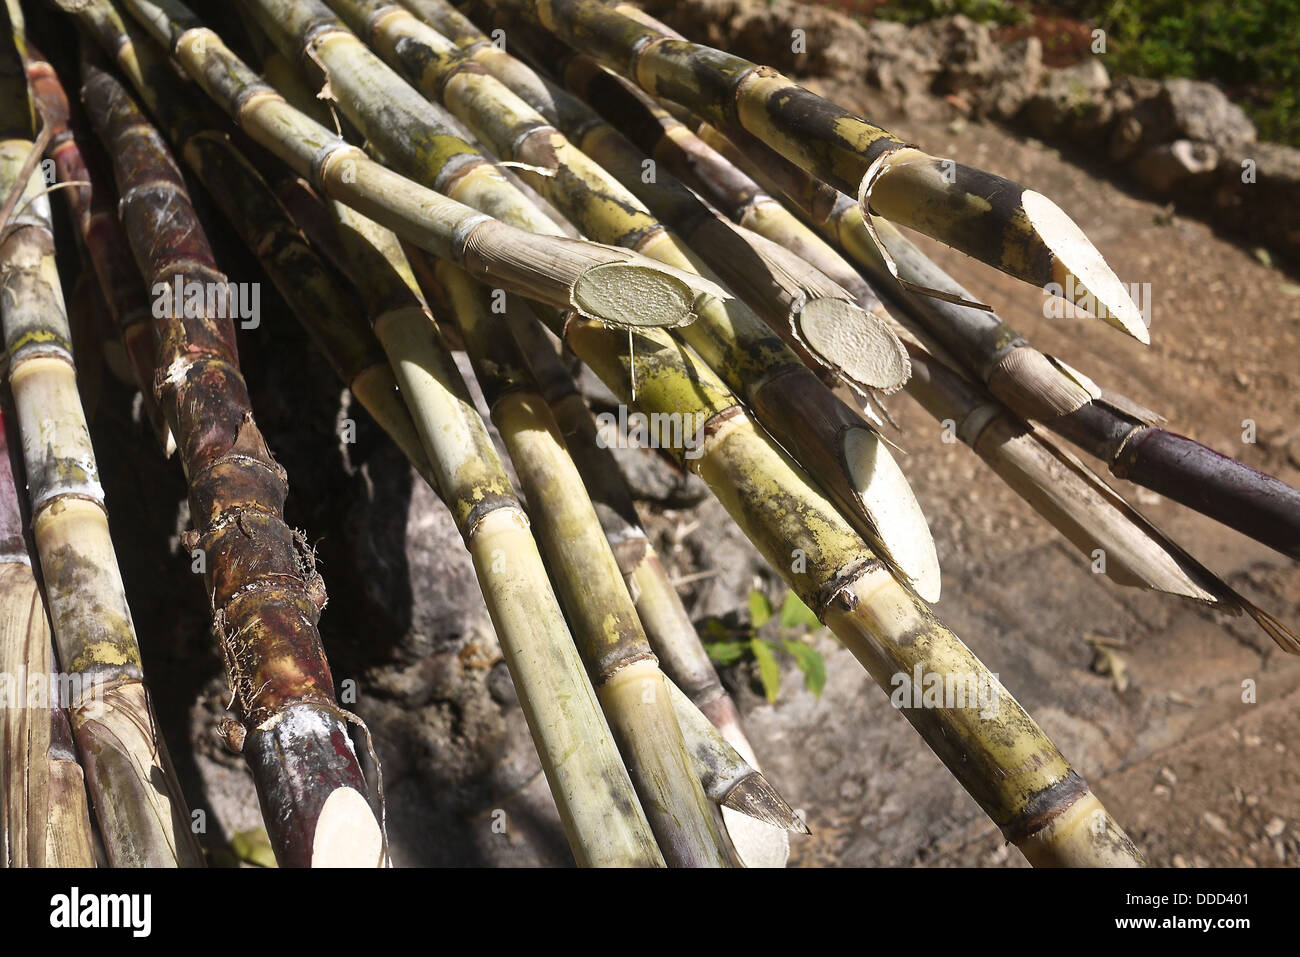 Sugar cane (Saccharum officinarum) stalks. Stock Photo